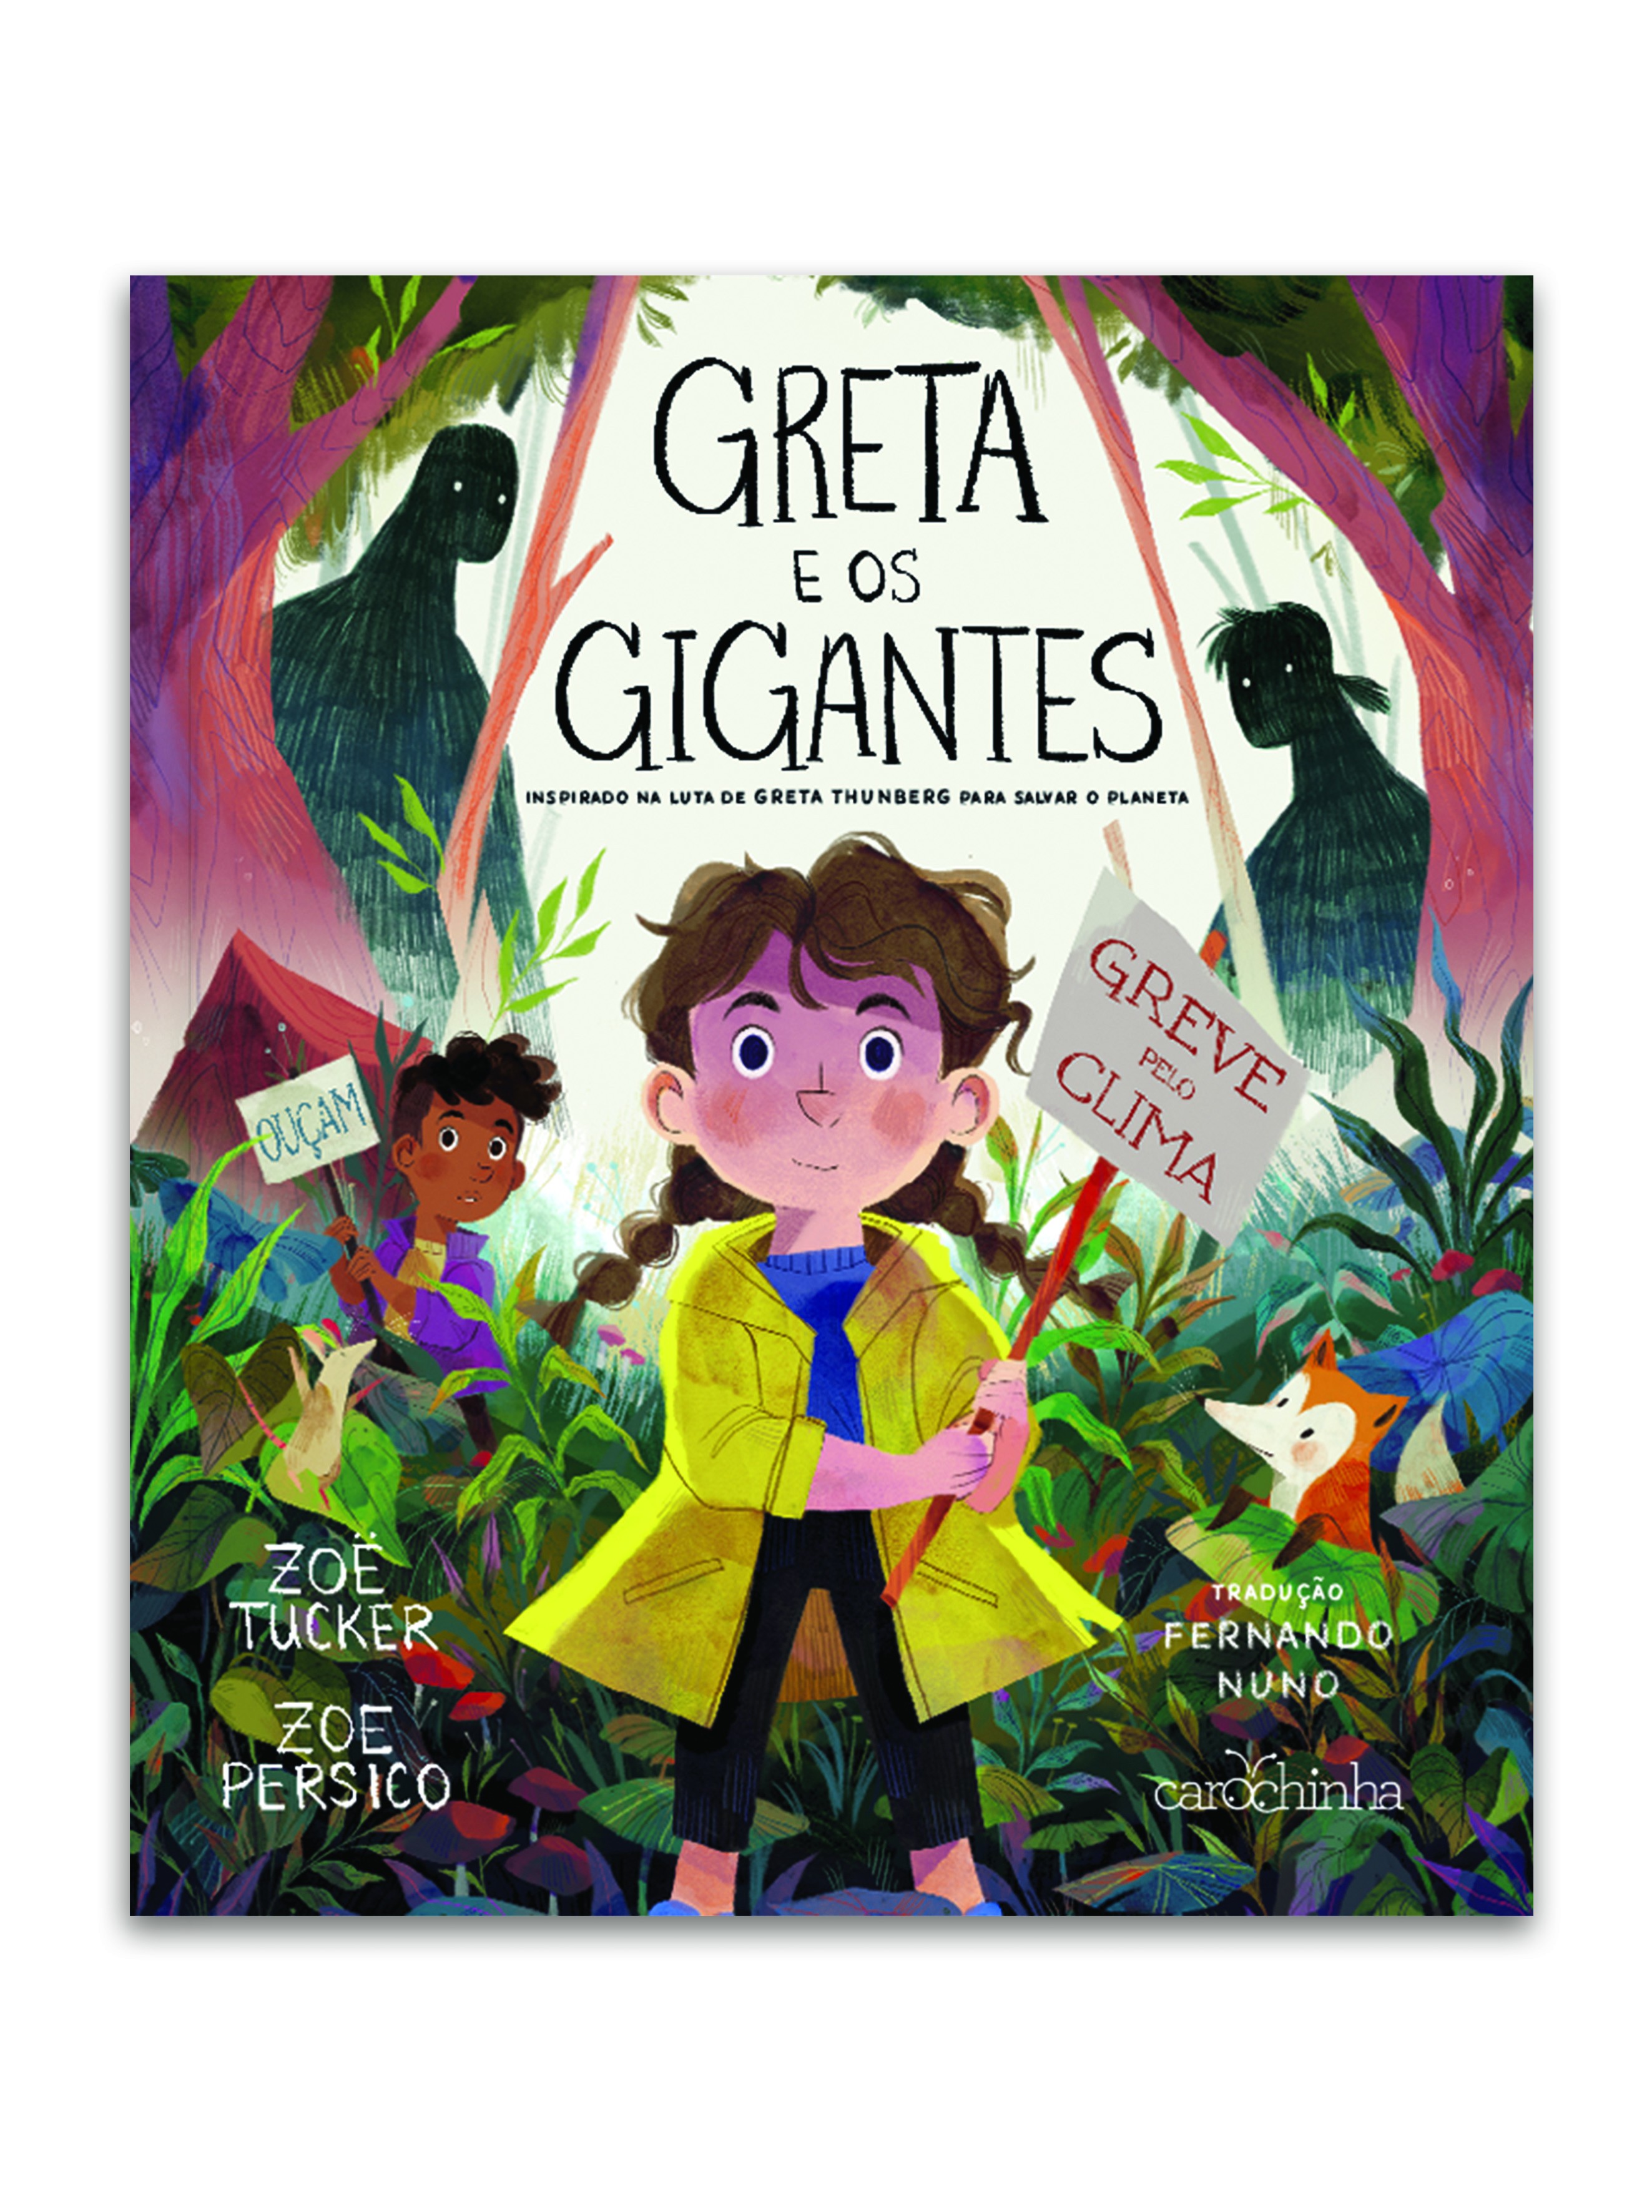 Greta e os Gigantes,de Zoë Tucker e Zoe Persico, tradução de Fernando Nuno, Carochina, R$47,90. A partir de 5 anos (Foto: Divulgação)